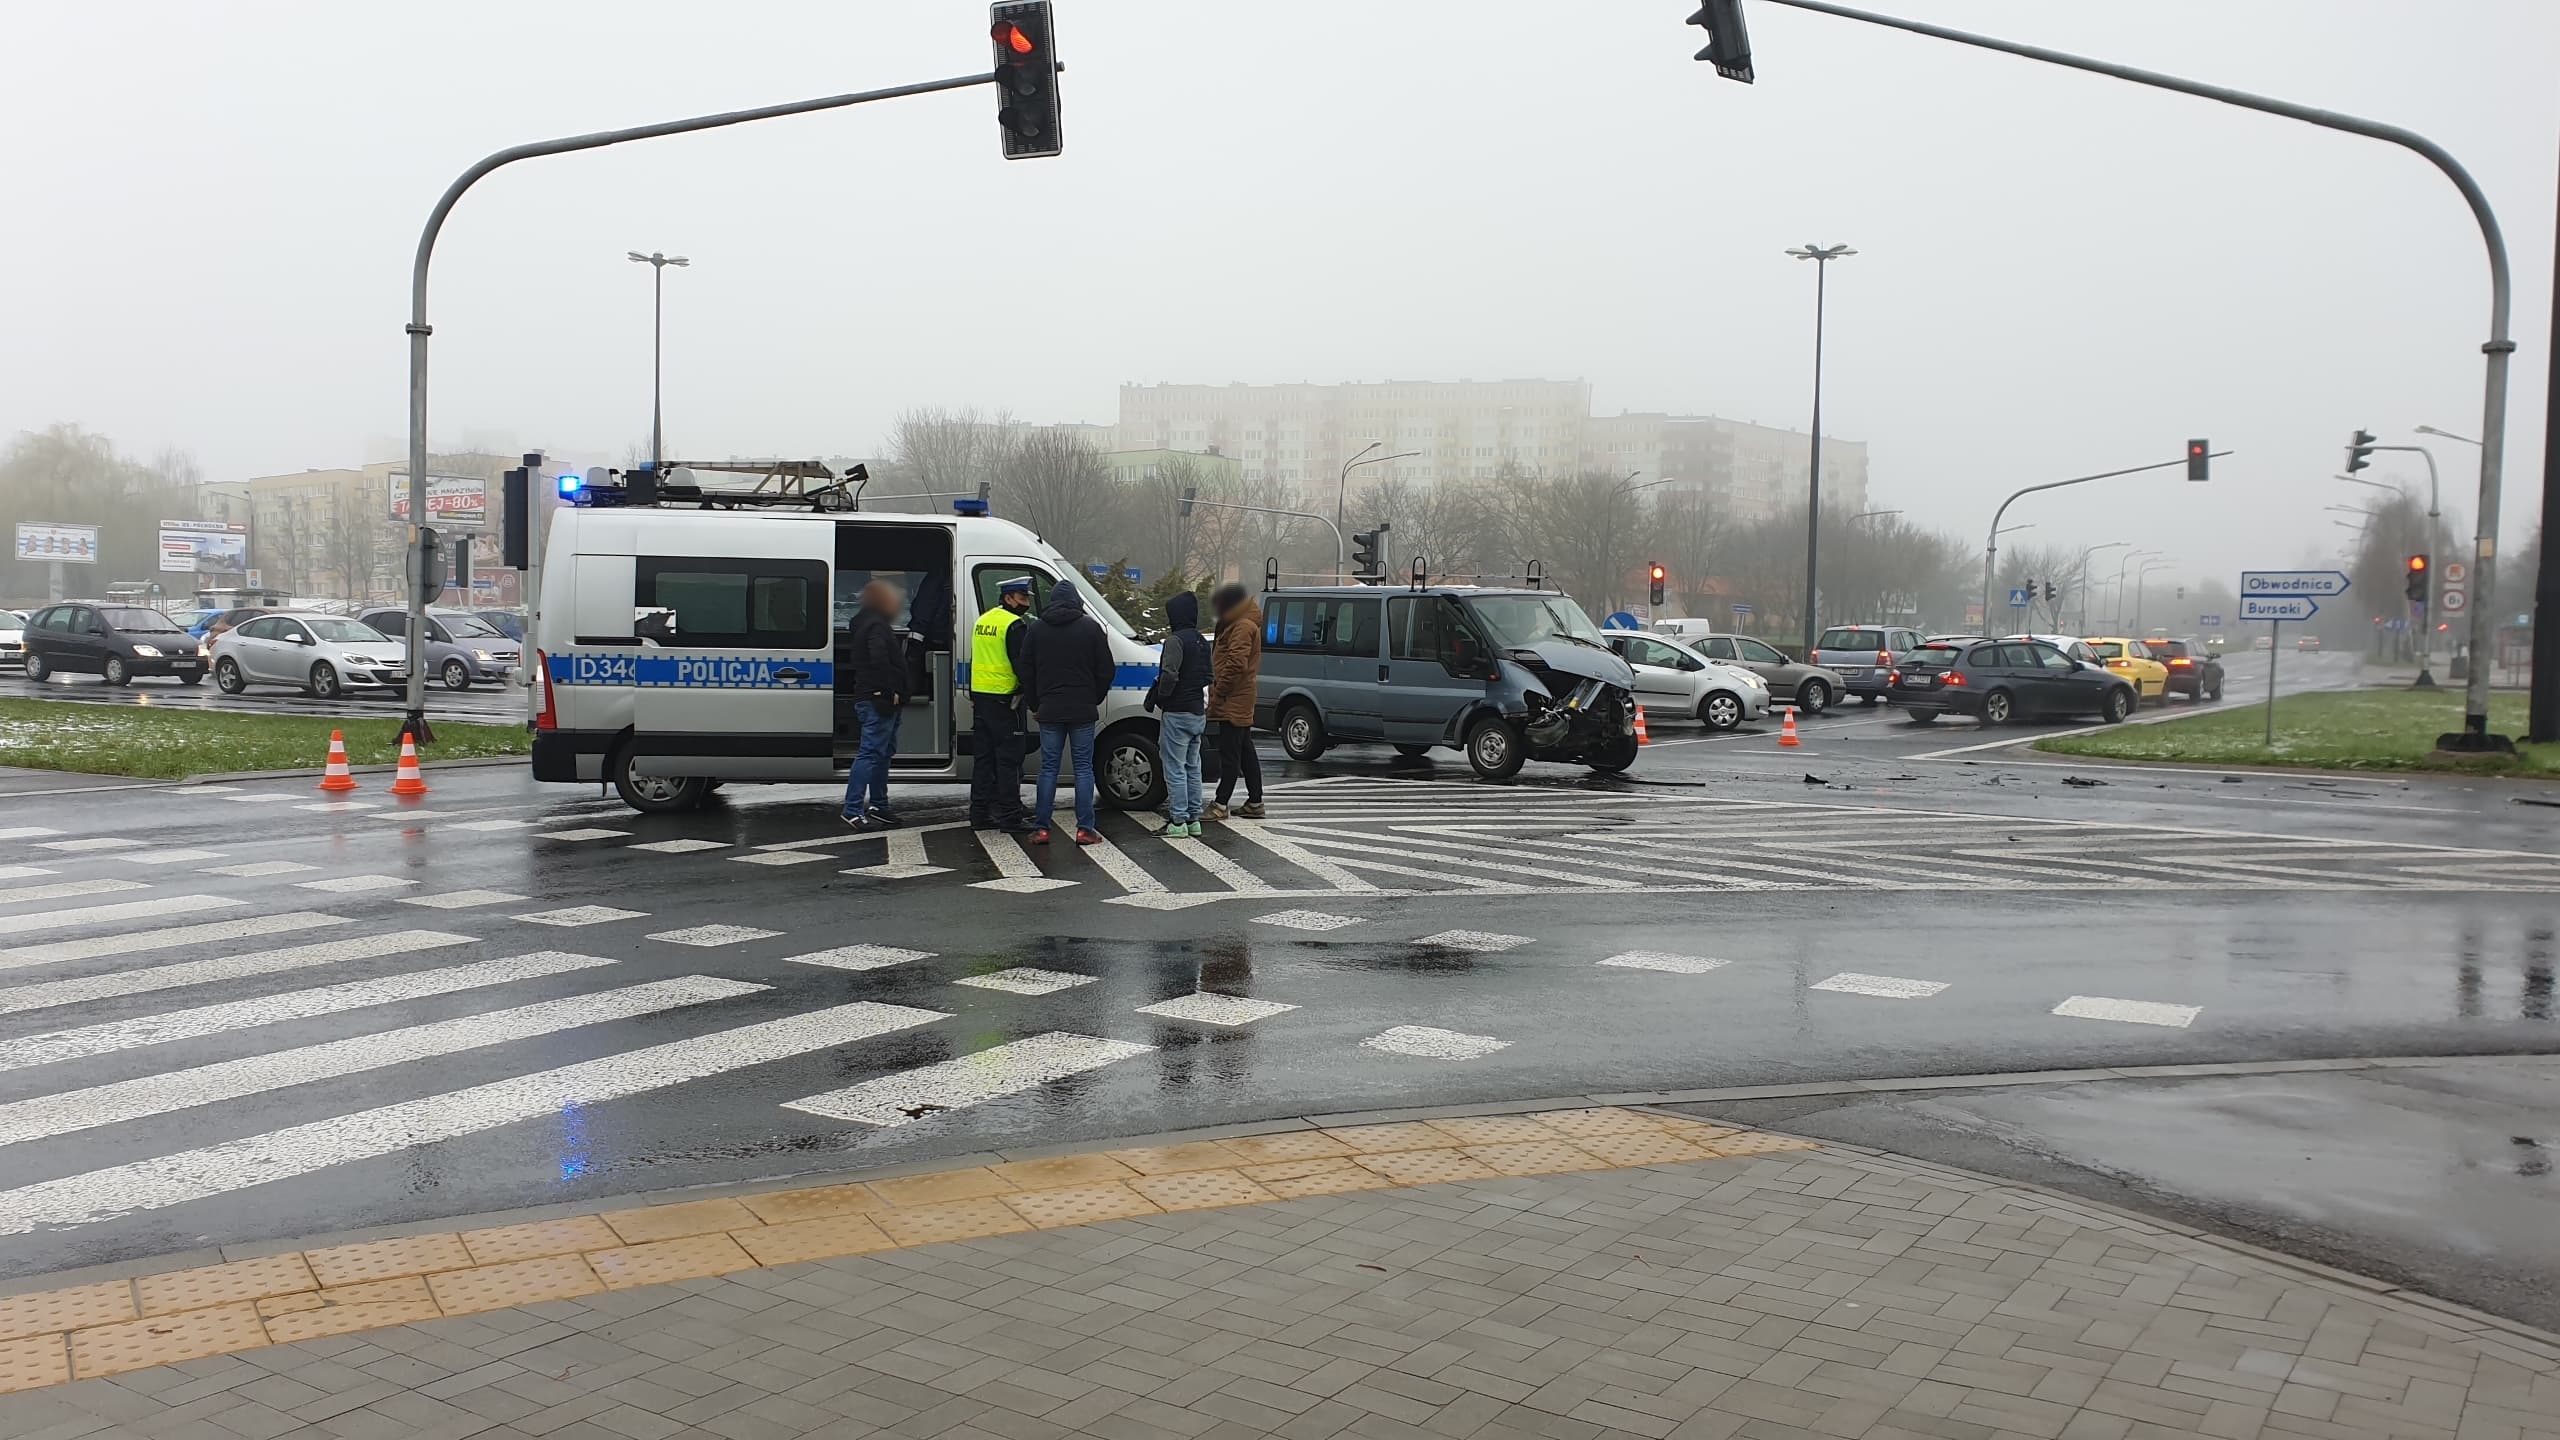 Wypadek na skrzyżowaniu w Lublinie. Dwie osoby poszkodowane, są utrudnienia w ruchu (zdjęcia)